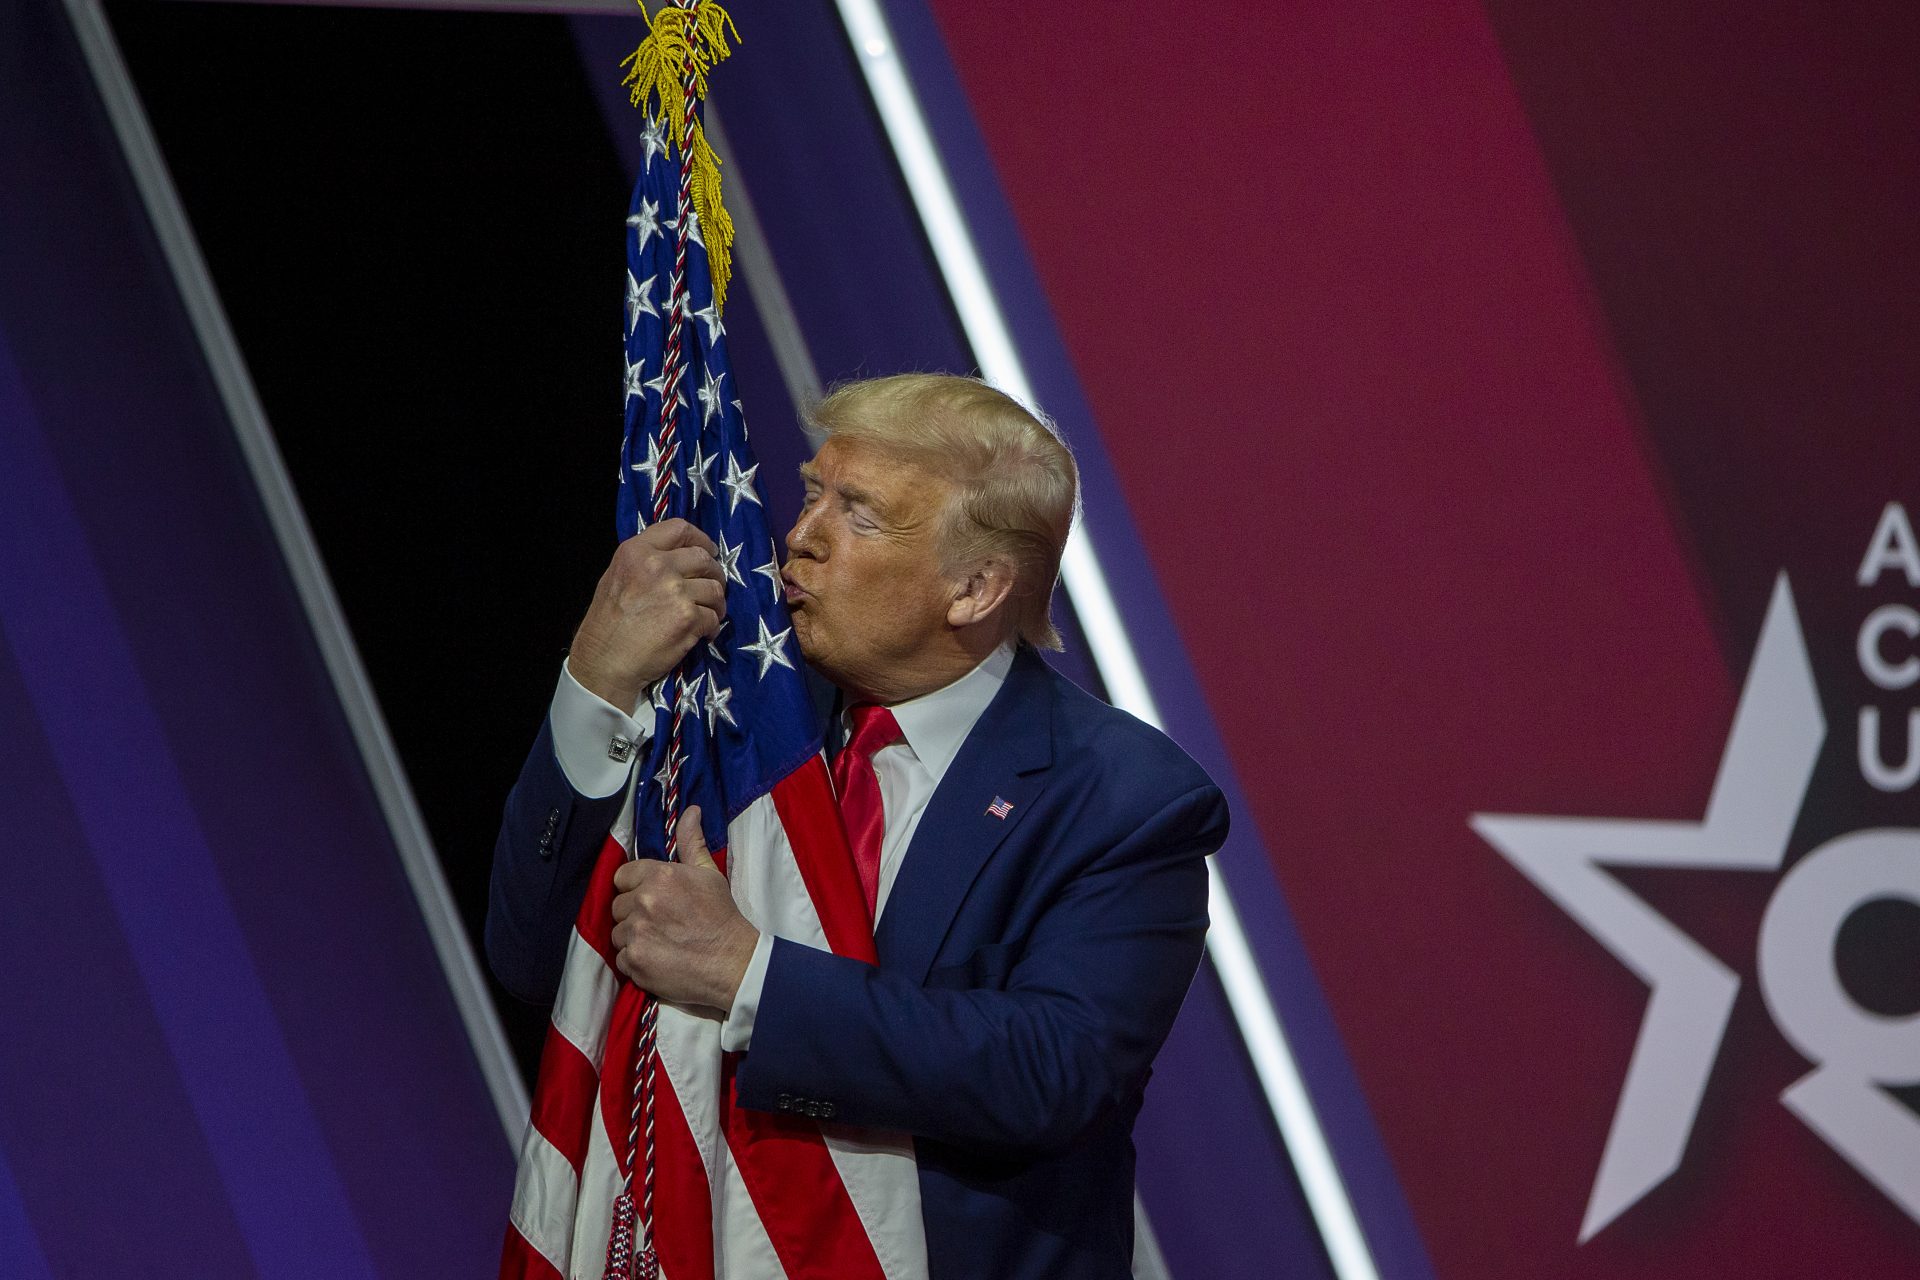 Un moment de tendresse avec le drapeau américain